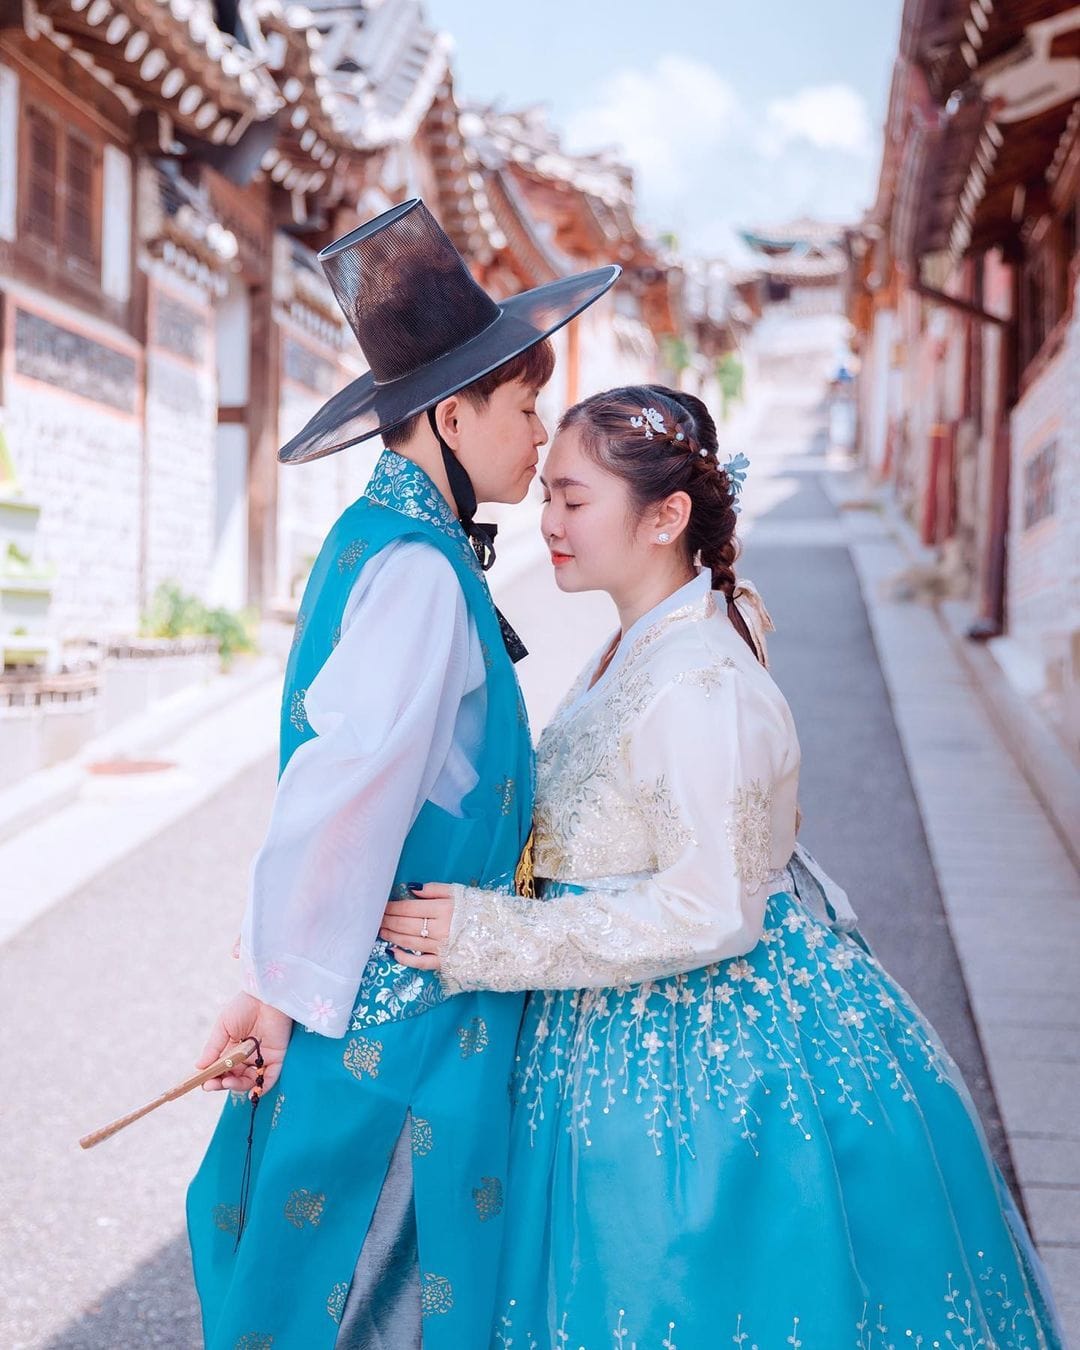 Mặc lùm xùm với gia đình, Thiện Nhân đăng ảnh ngọt 'như phim Hàn' bên người yêu đồng giới tại xứ sở kim chi - Ảnh 1